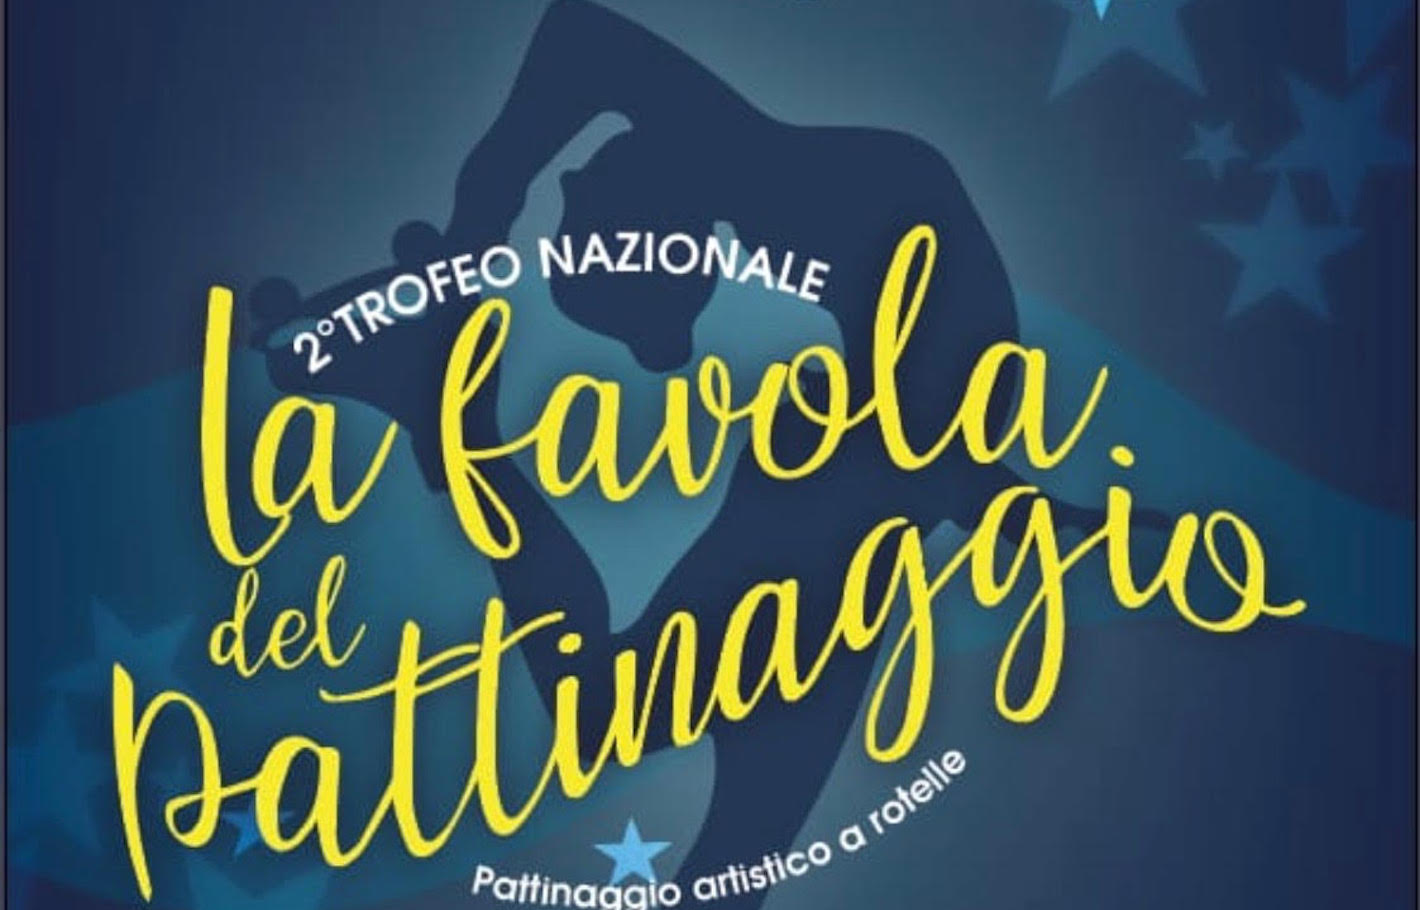 images/_2_Trofeo_Nazionale_La_favola_del_pattinaggio.jpg